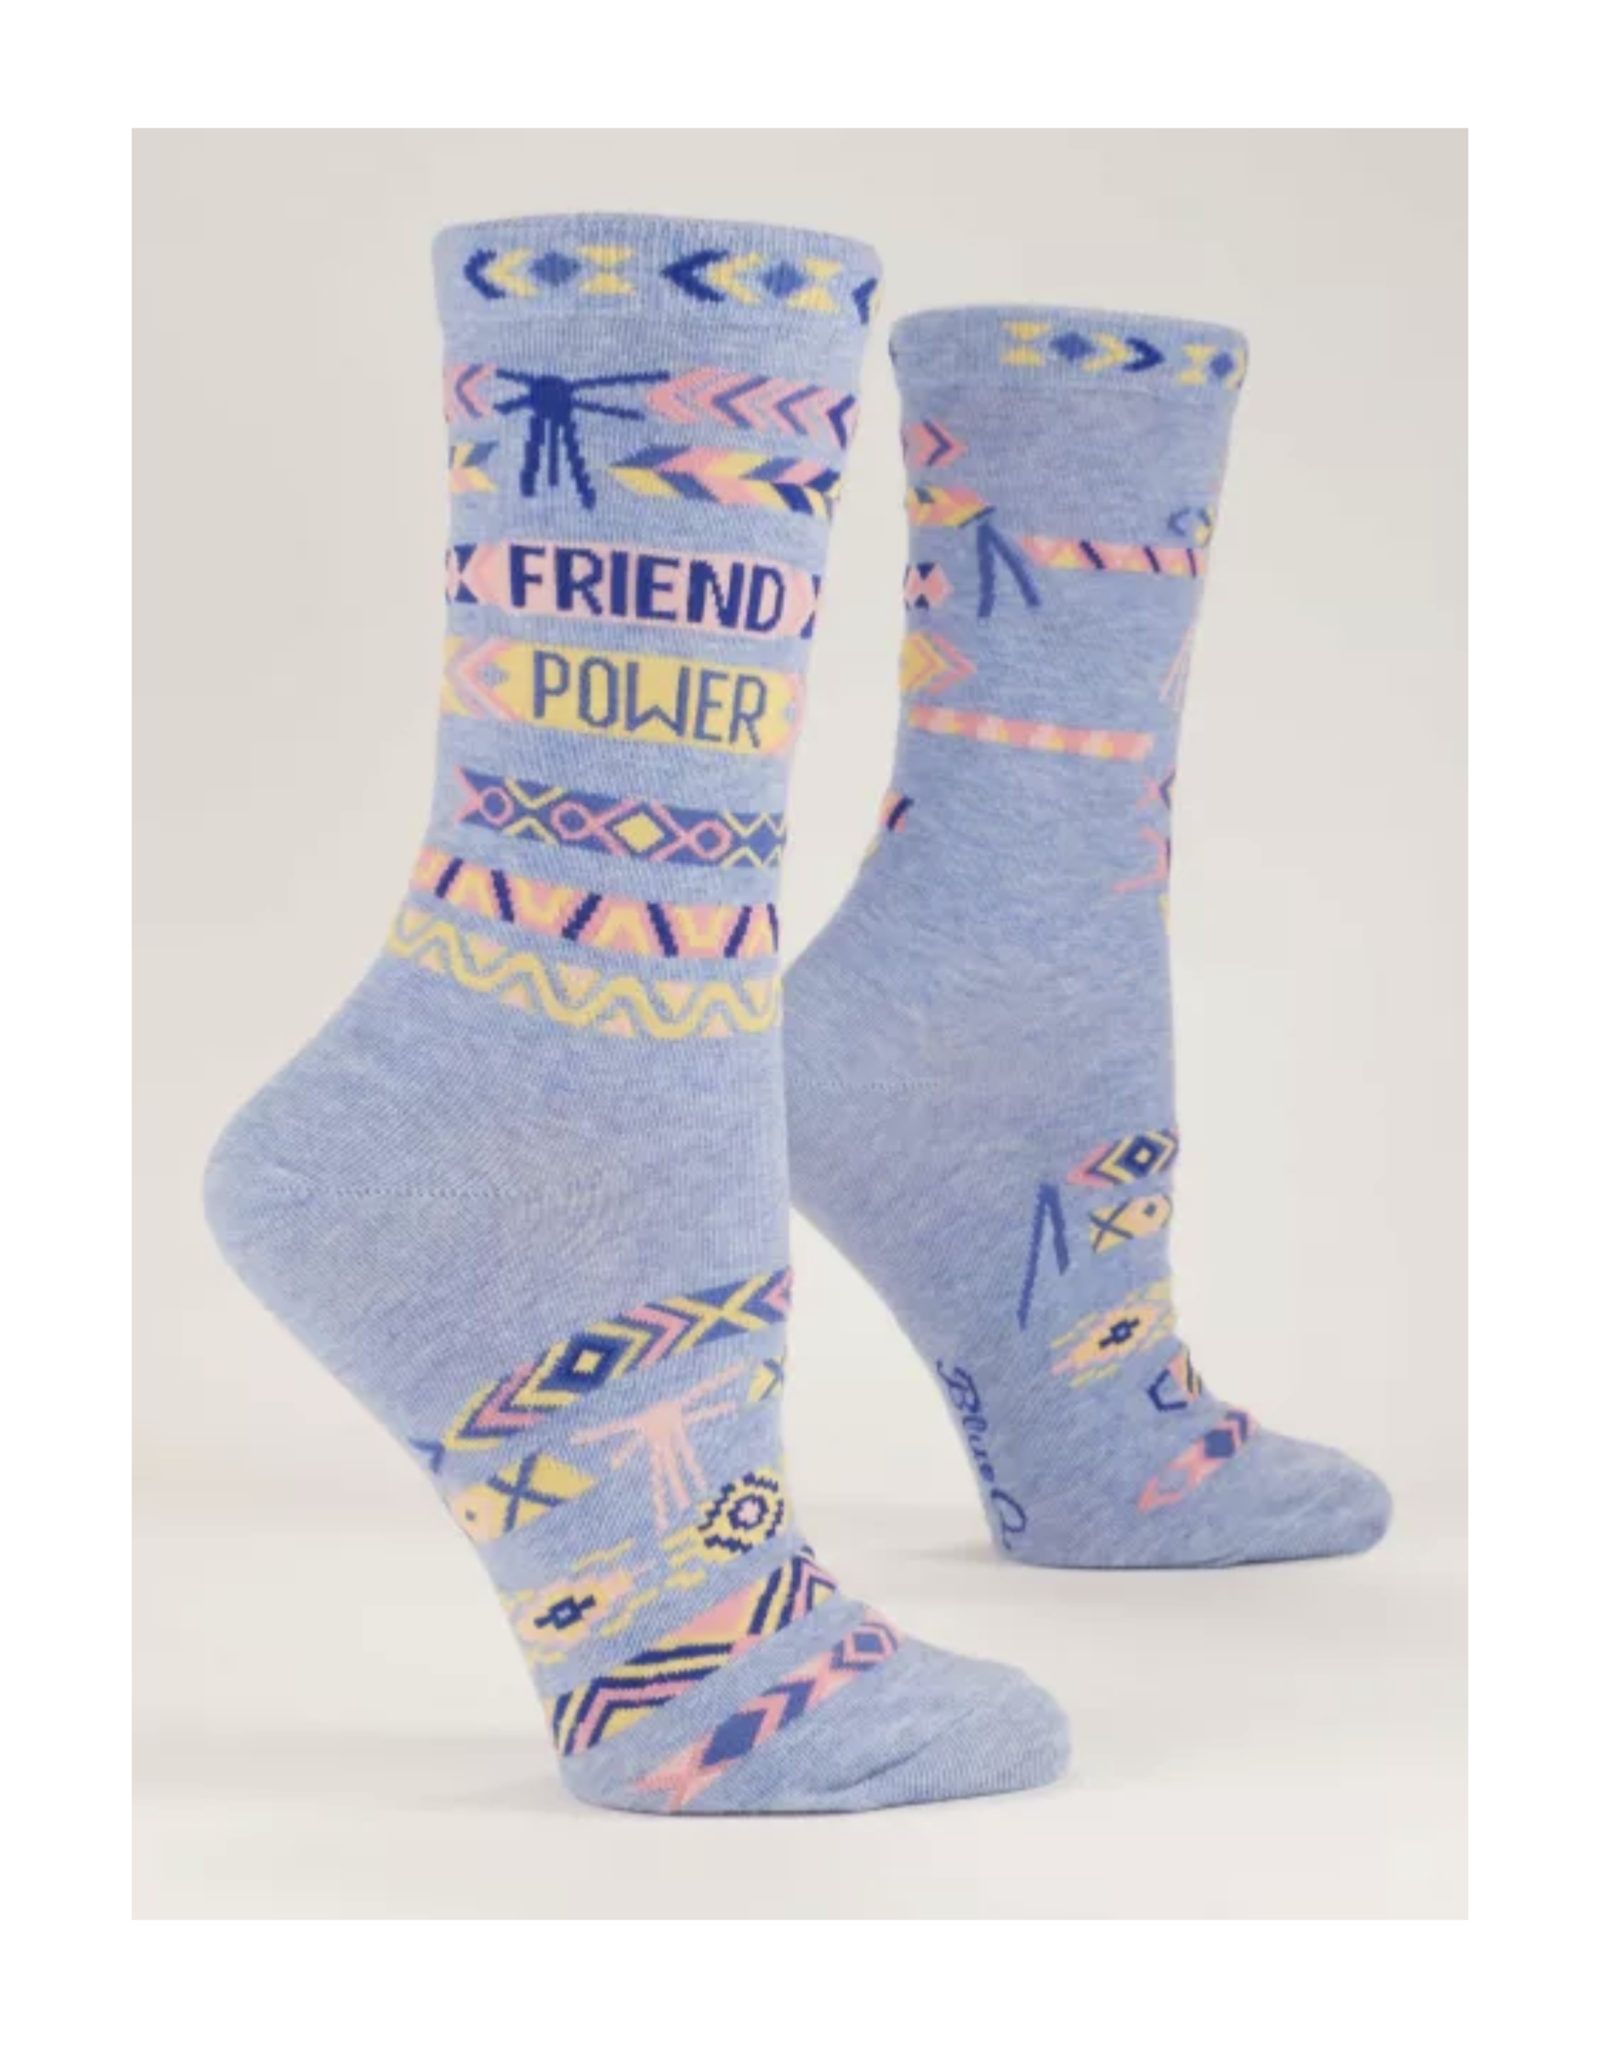 Friend Power Women's Crew Socks